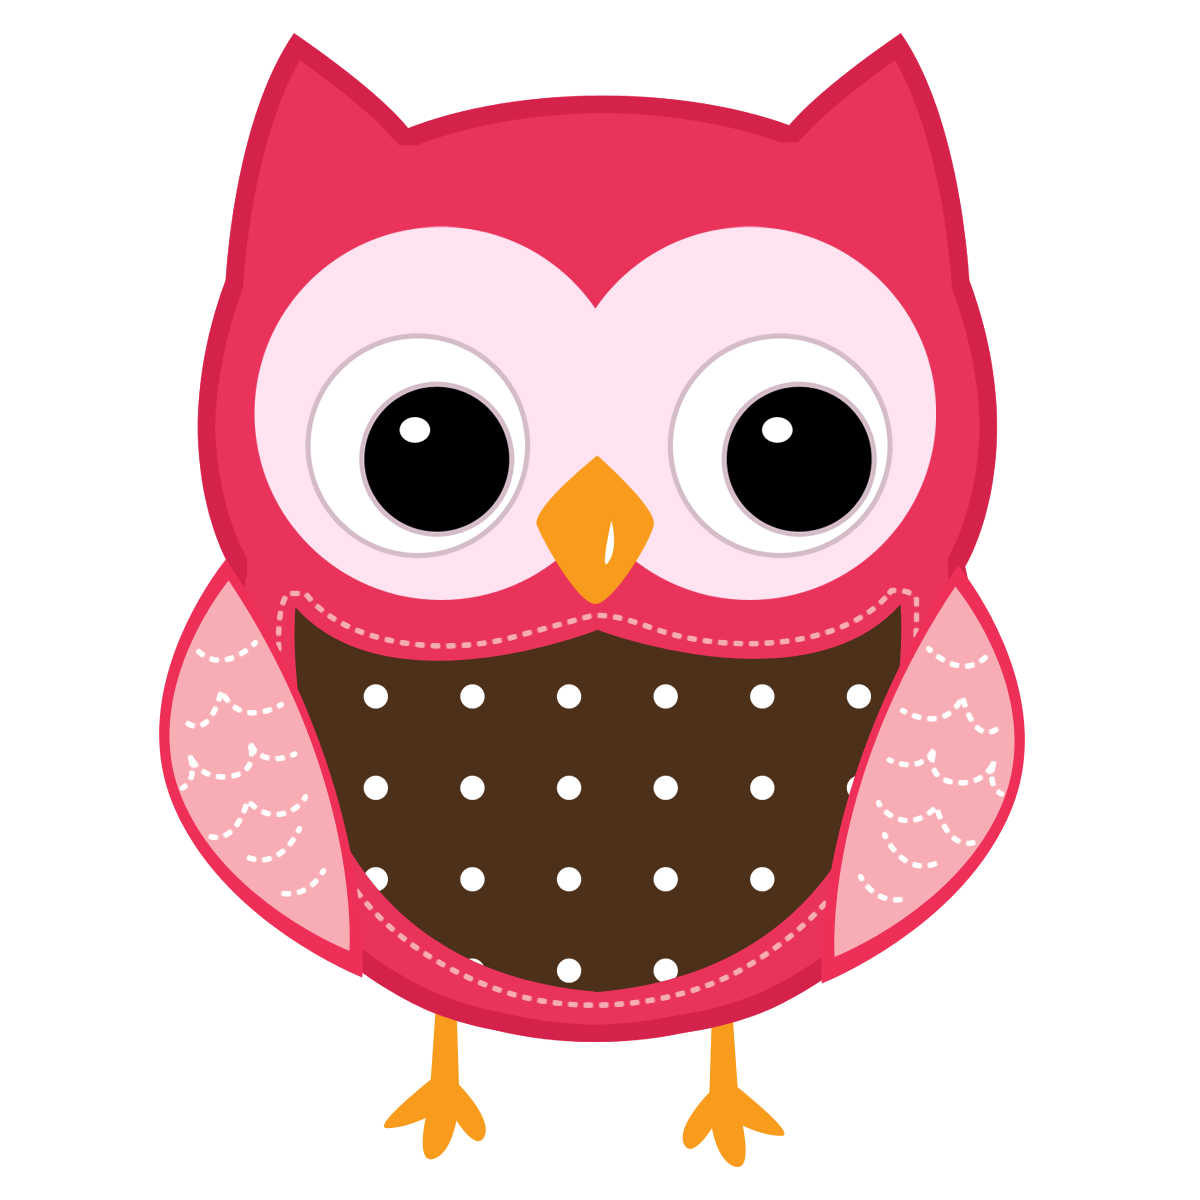 Cute Owl Drawings | Cute Owl 